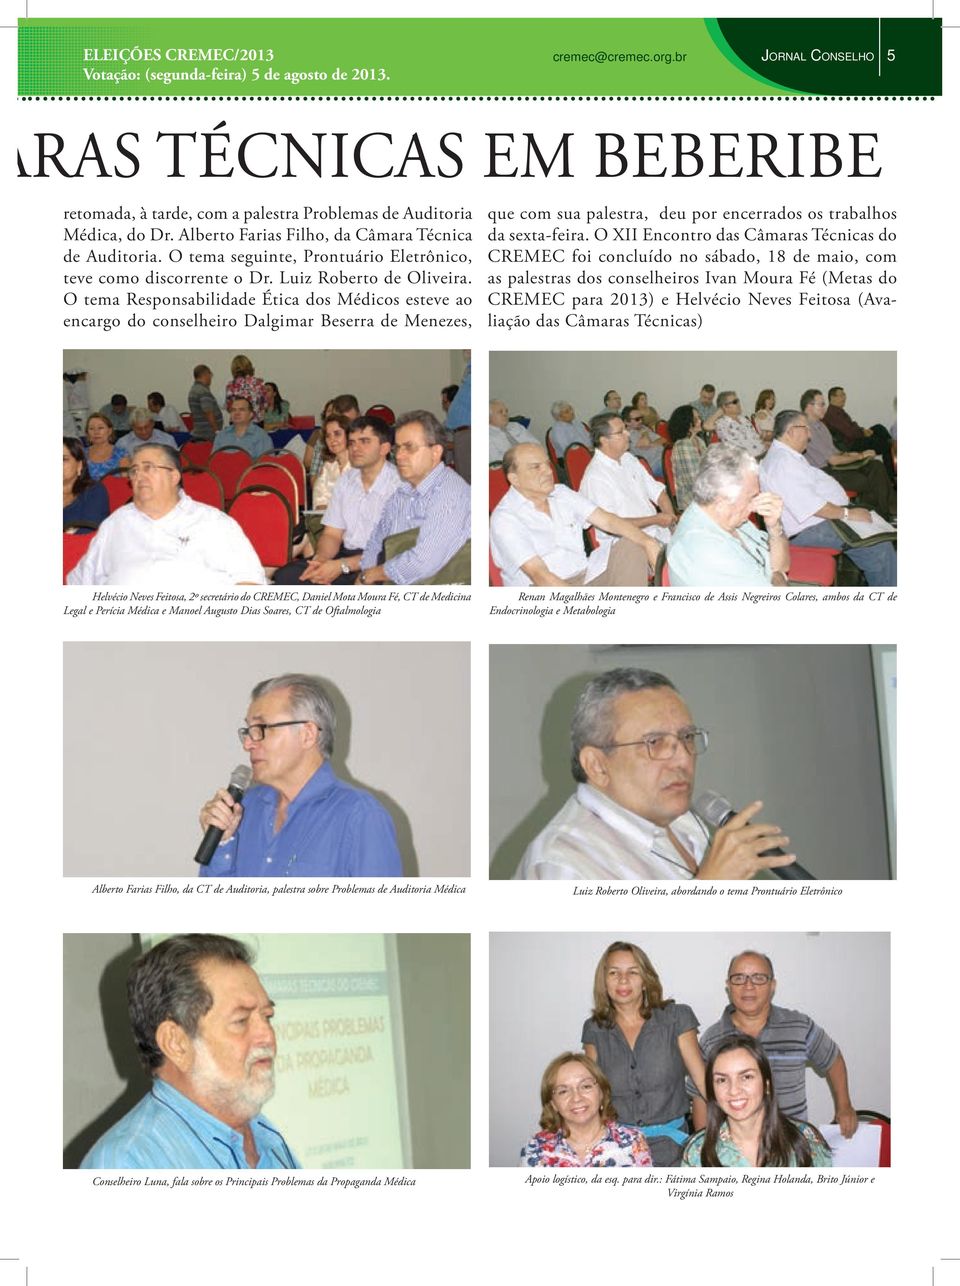 O tema Responsabilidade Ética dos Médicos esteve ao encargo do conselheiro Dalgimar Beserra de Menezes, que com sua palestra, deu por encerrados os trabalhos da sexta-feira.